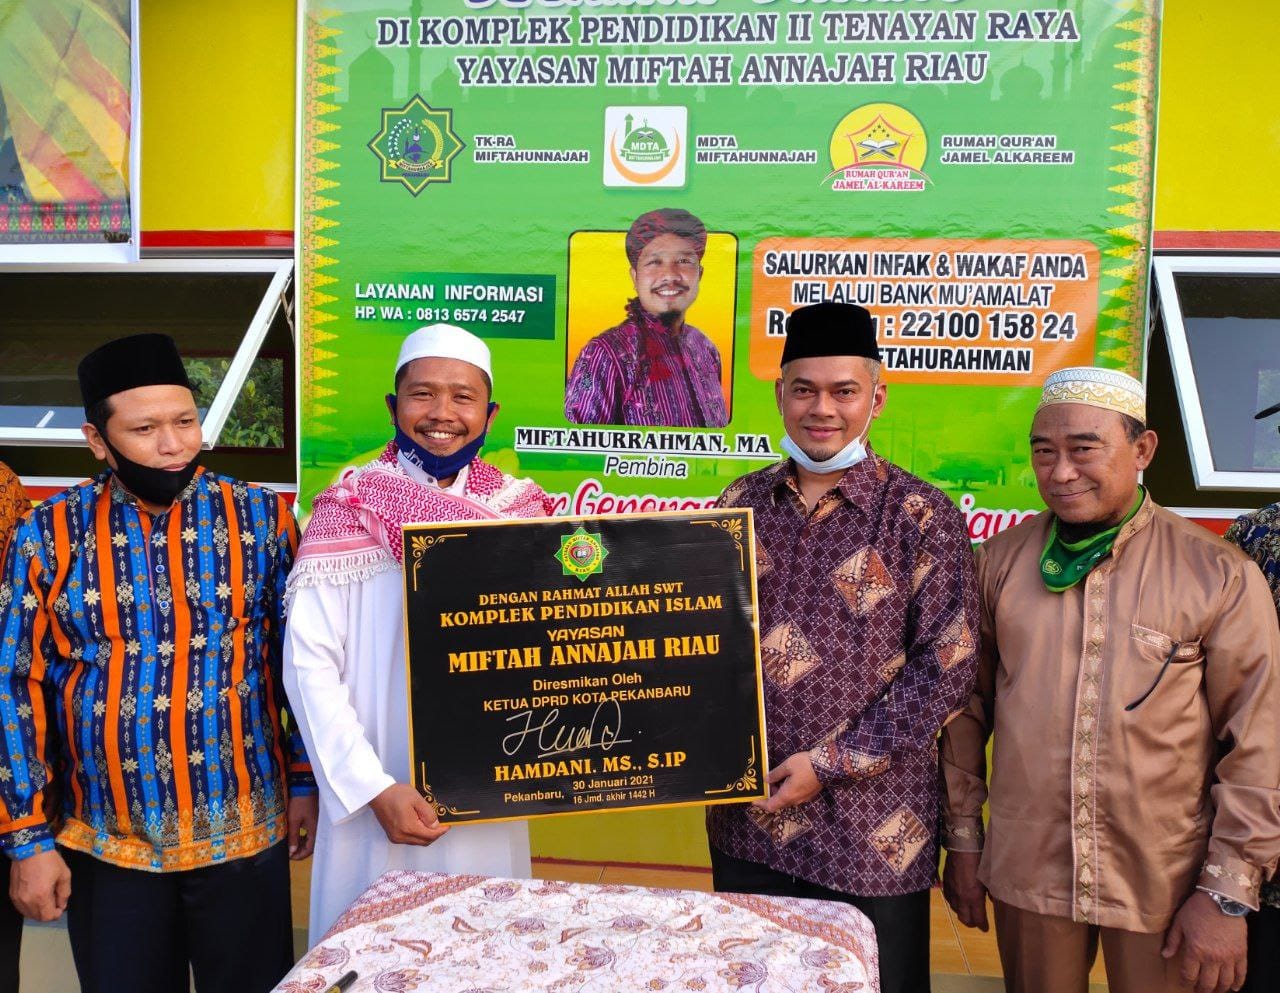 Komplek Pendidikan Islam Yayasan Miftah Annajah Riau Diresmikan Hamdani